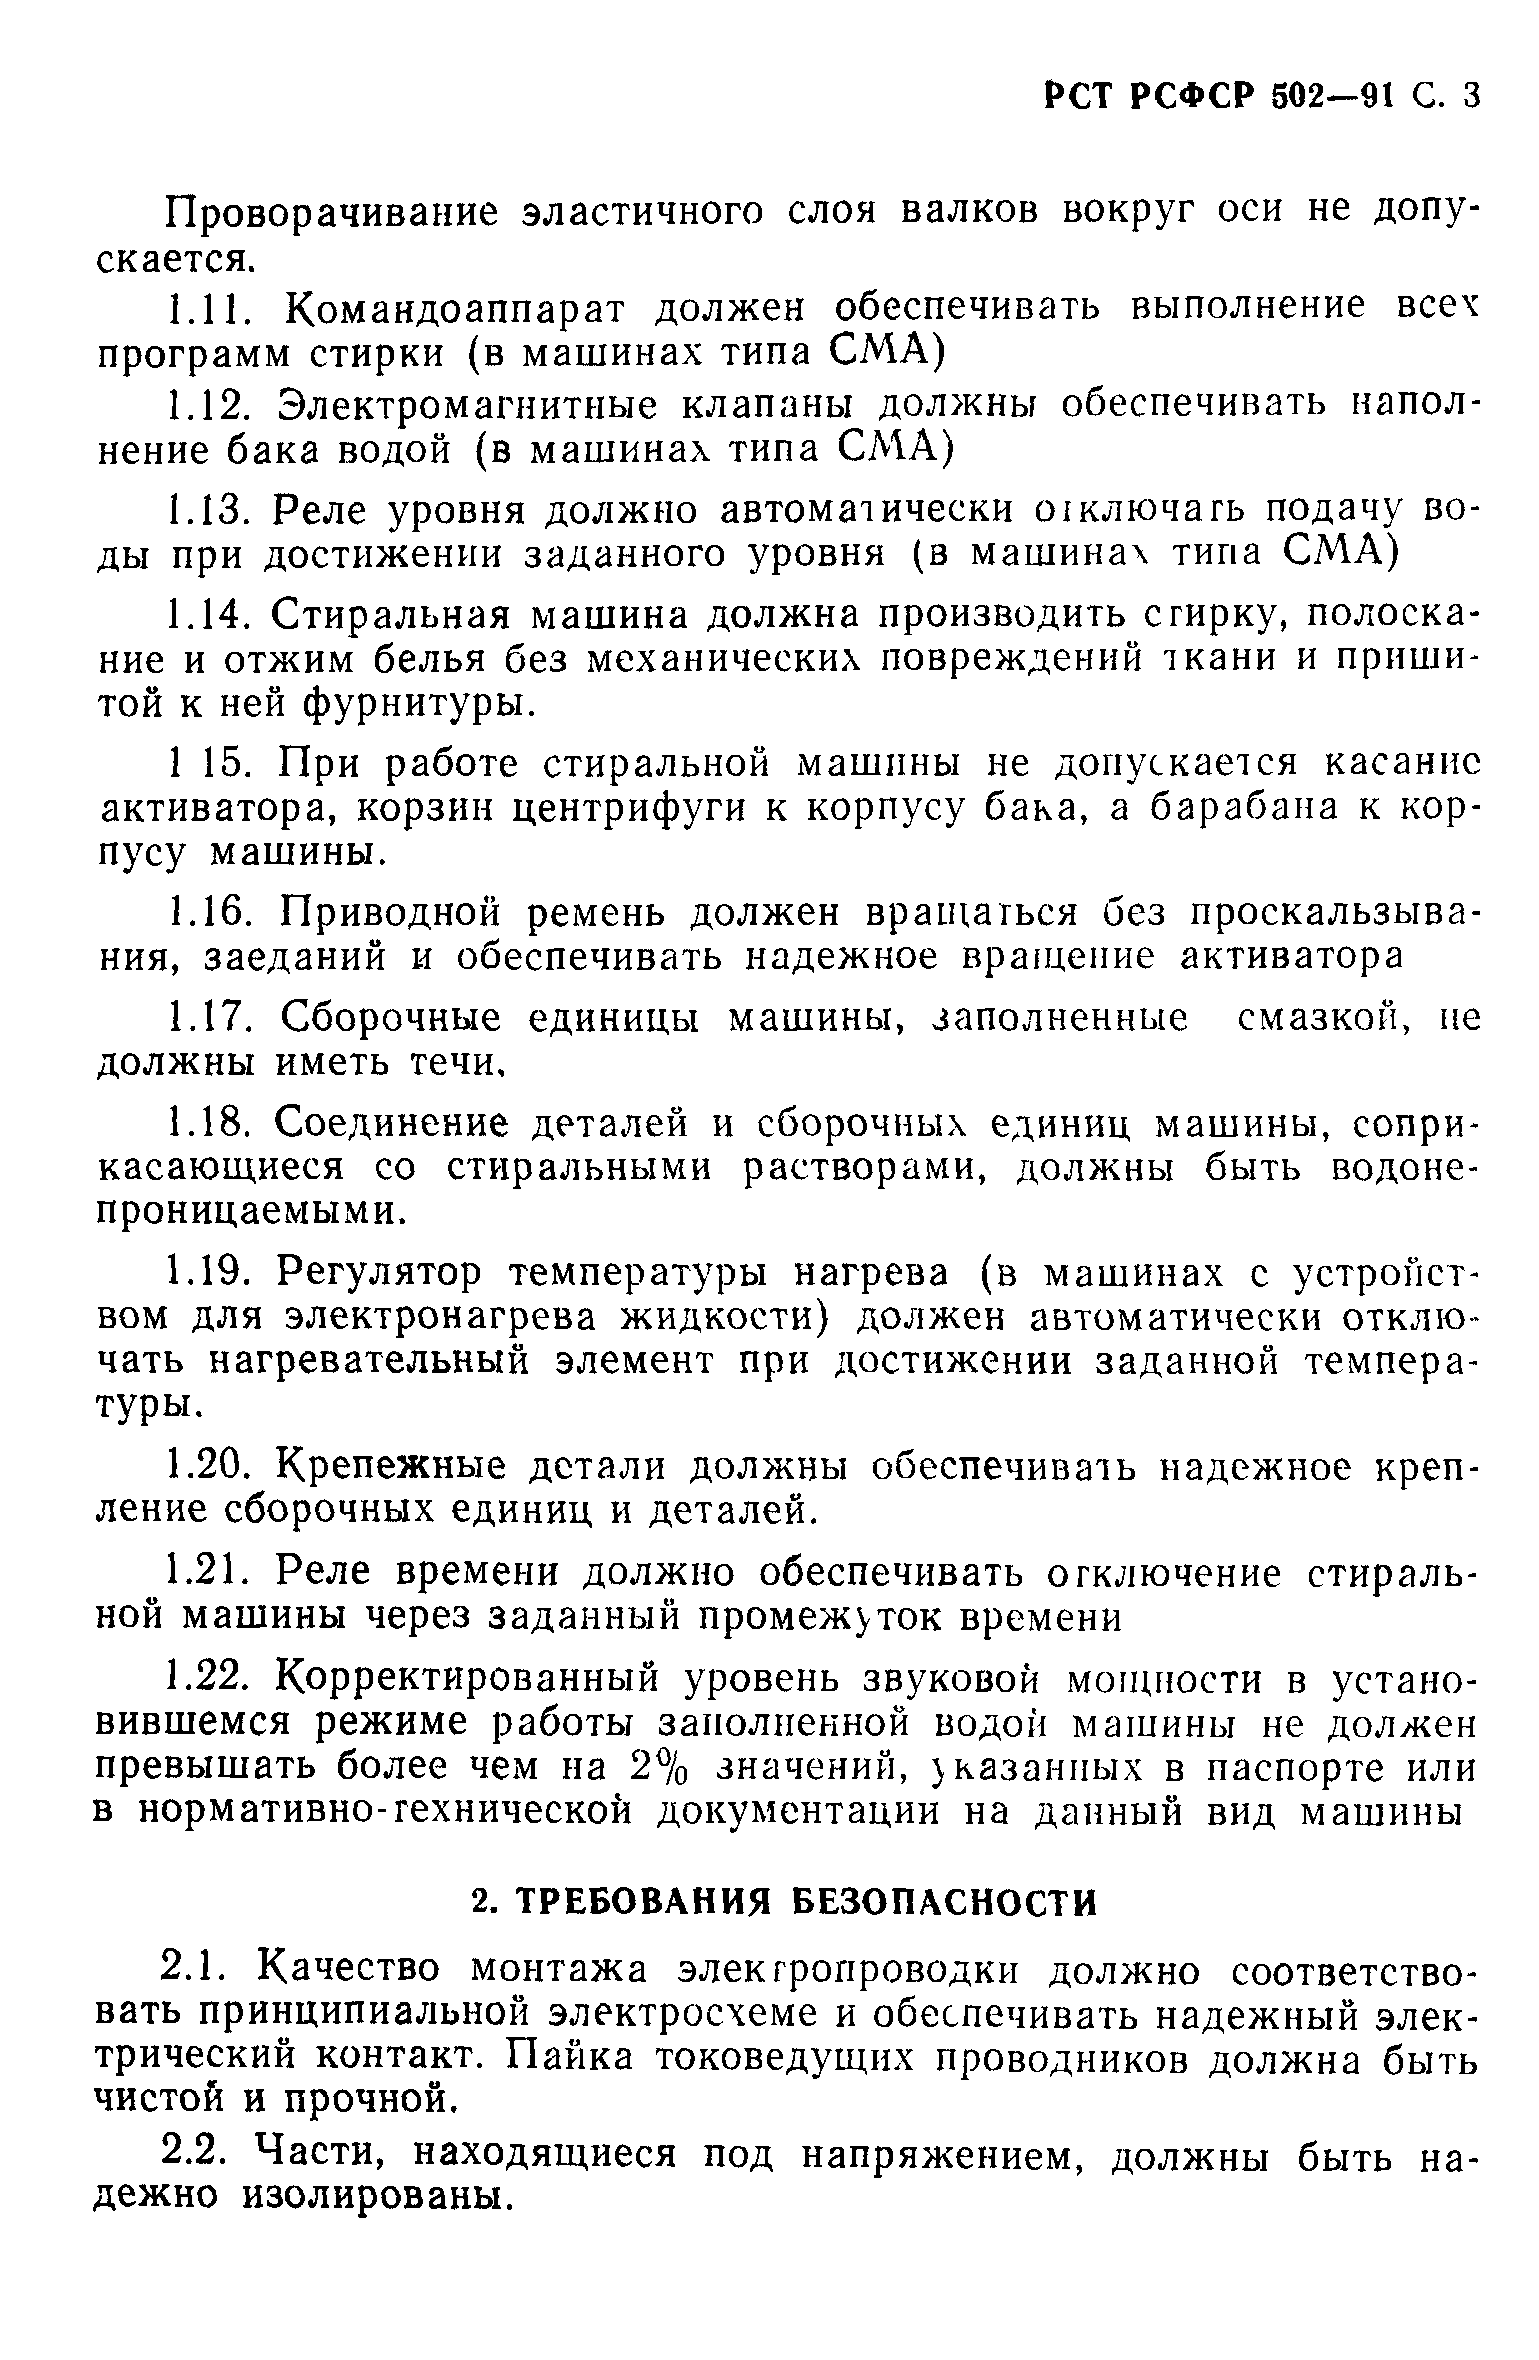 РСТ РСФСР 502-91